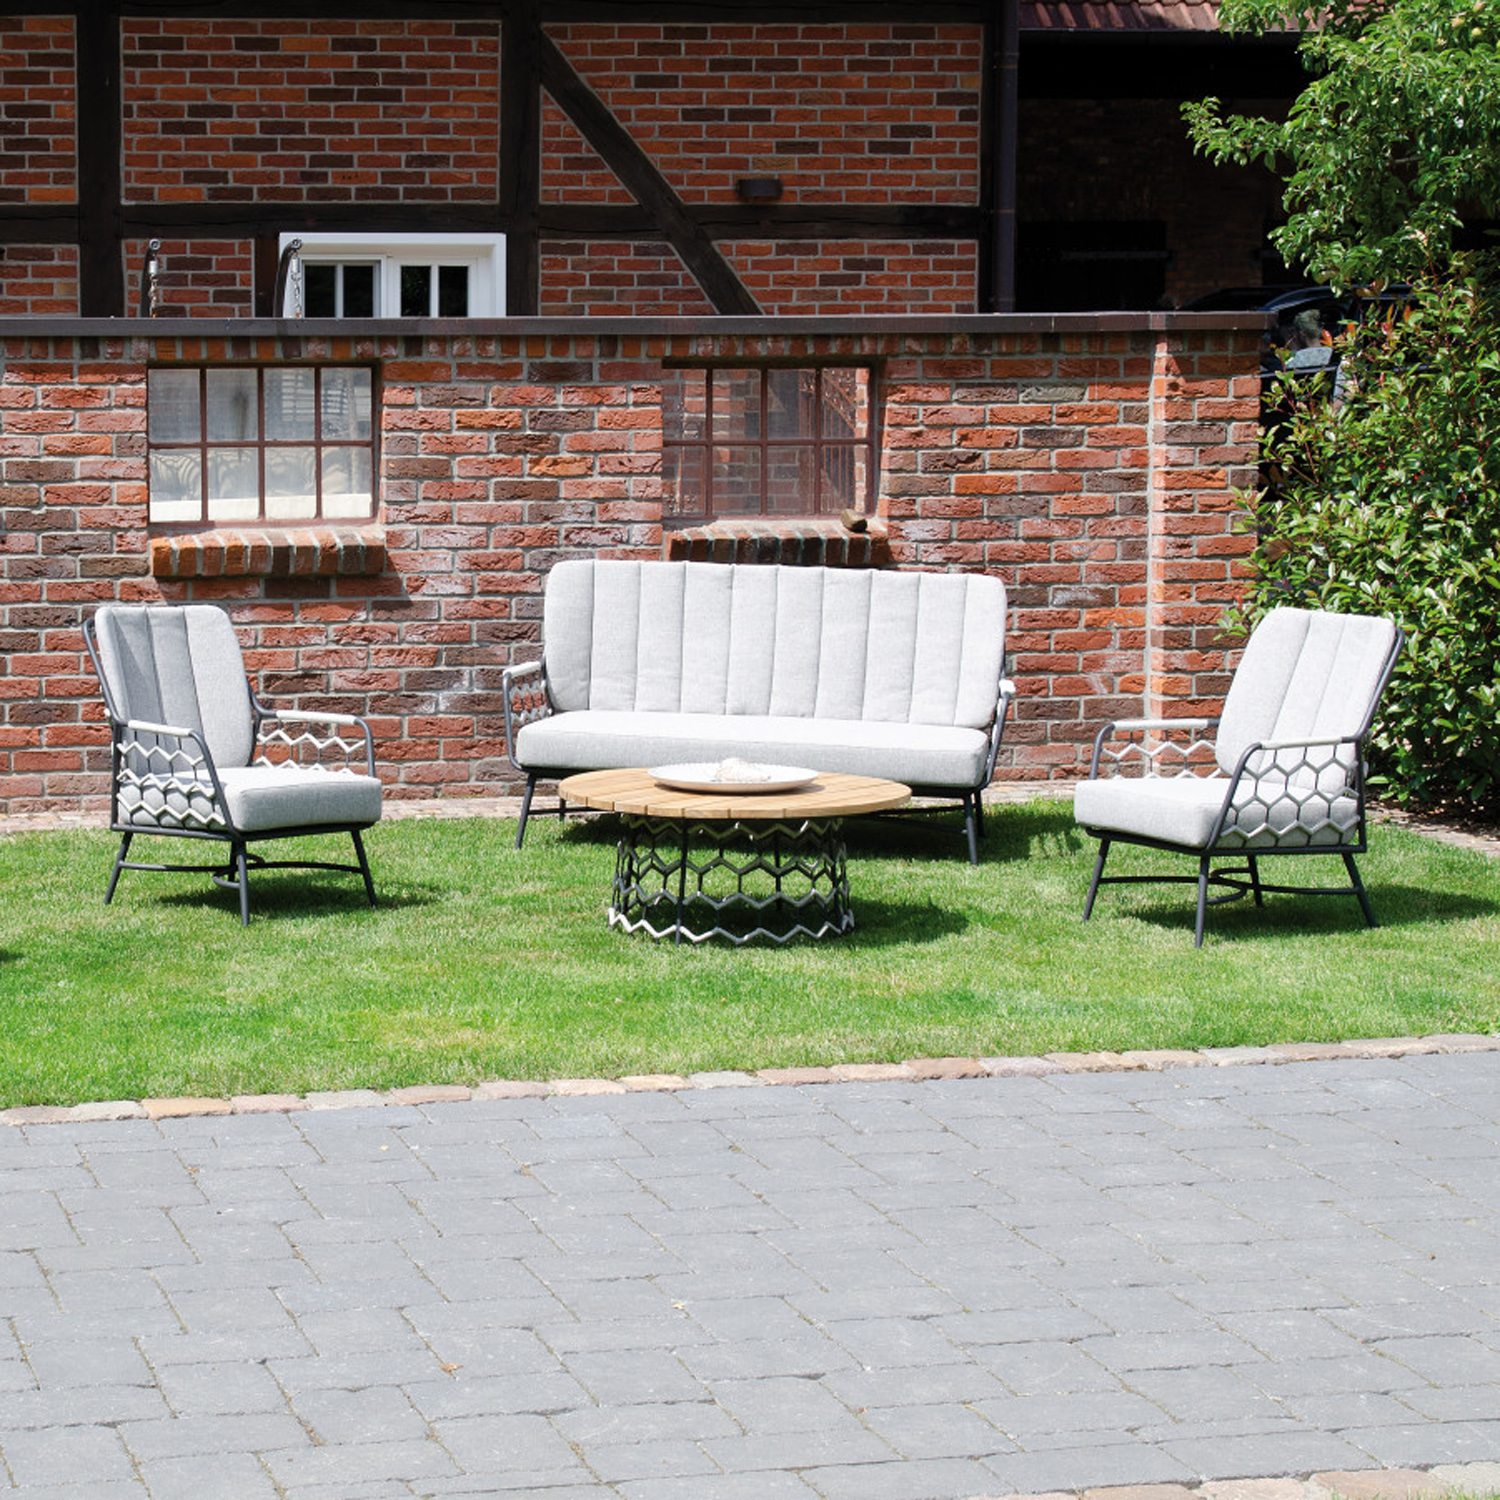 SonnenPartner Lounge Beistelltisch YALE rund silbergrau Gartentisch Alu Kunststoffgeflecht Polyrope Teakholz